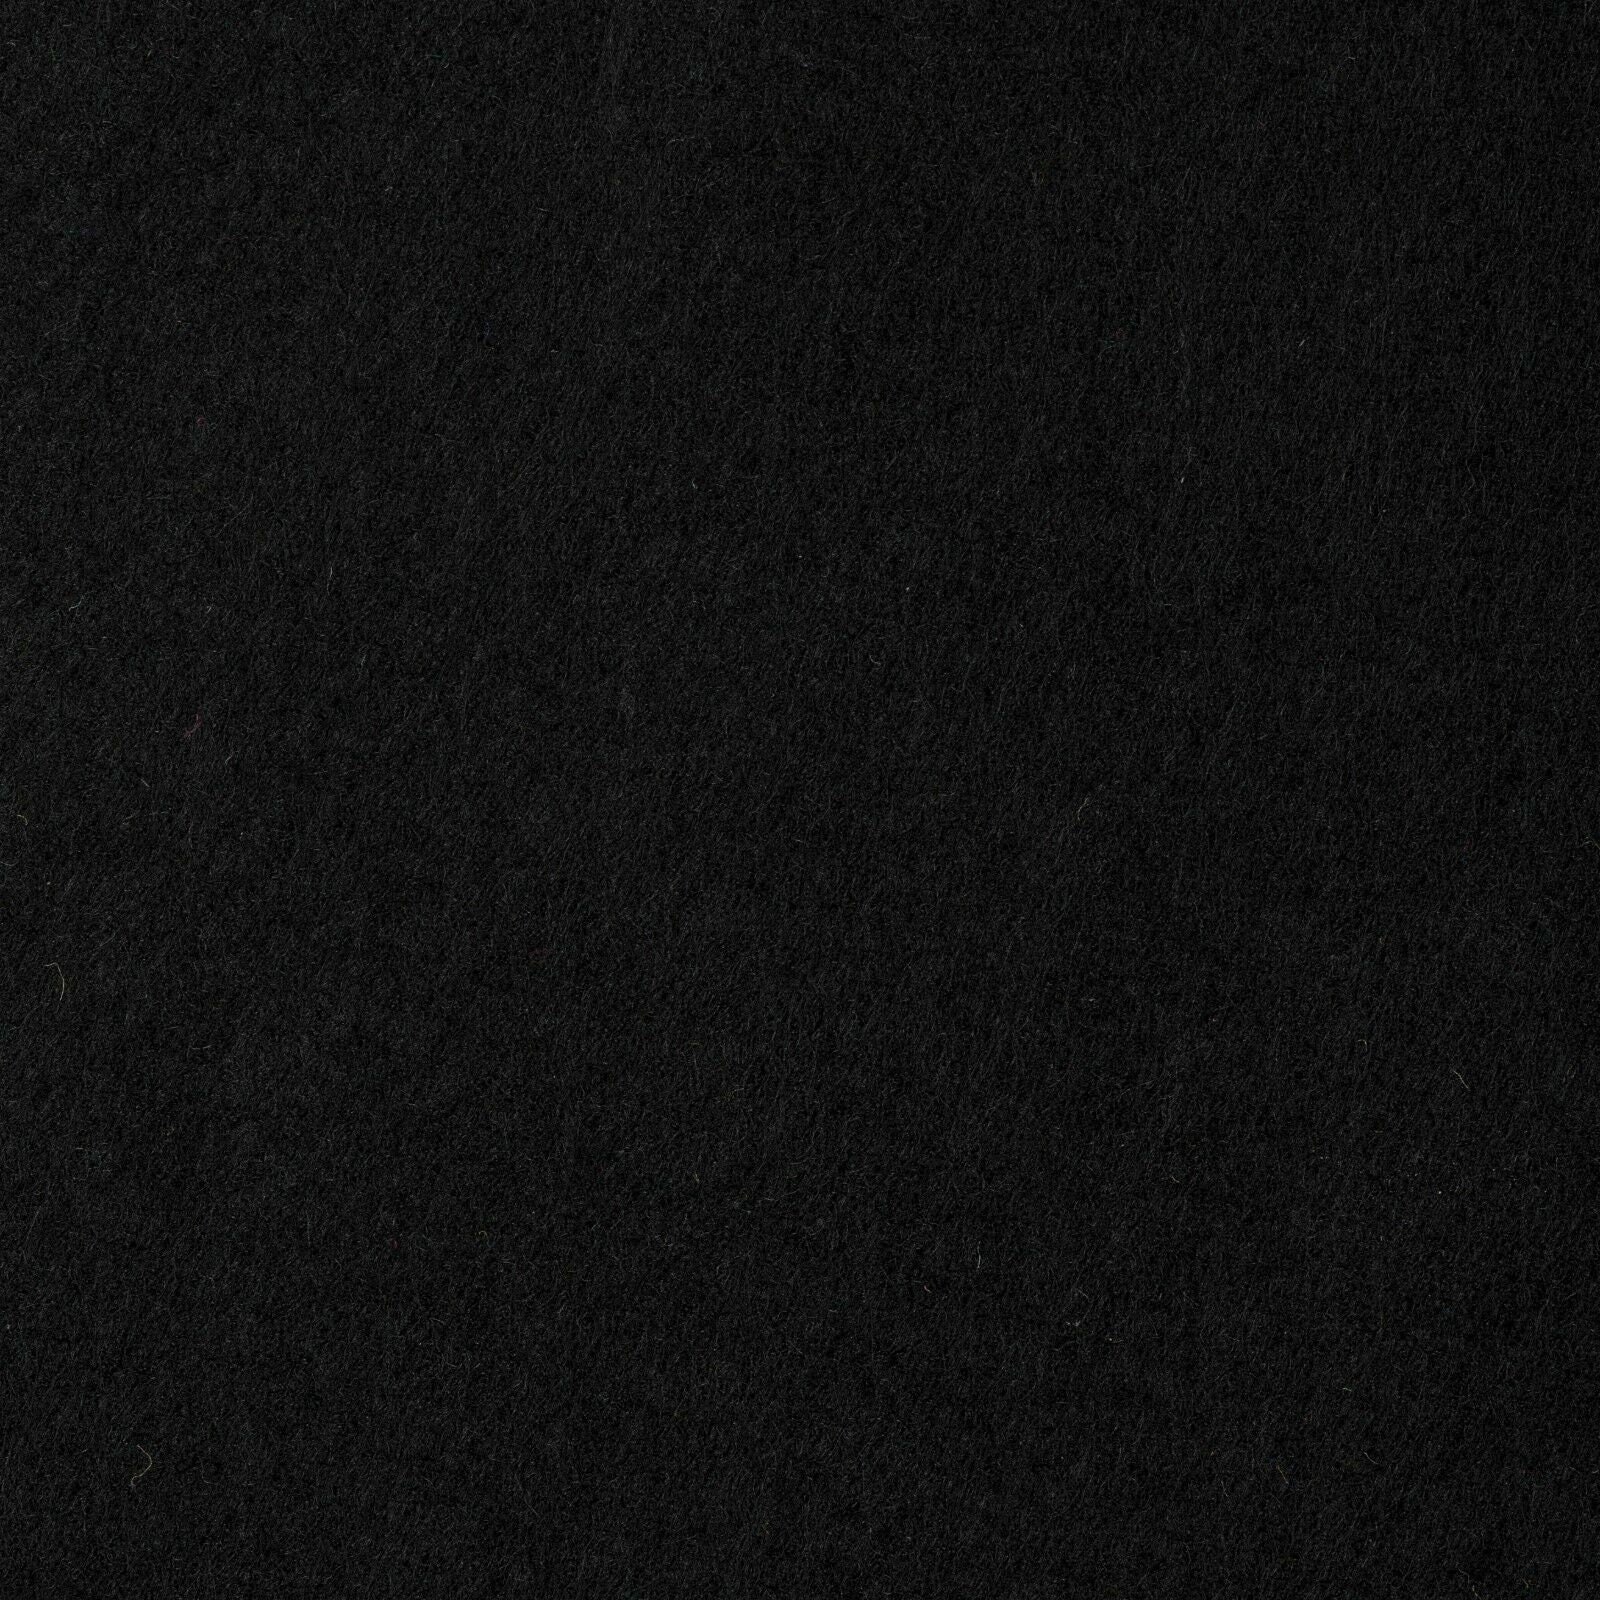 Schwarz Selbstklebend Klebefilz 2mm Filzstoff Nadelfilz 50cm breit  Bastelfilz Stoff Meterware